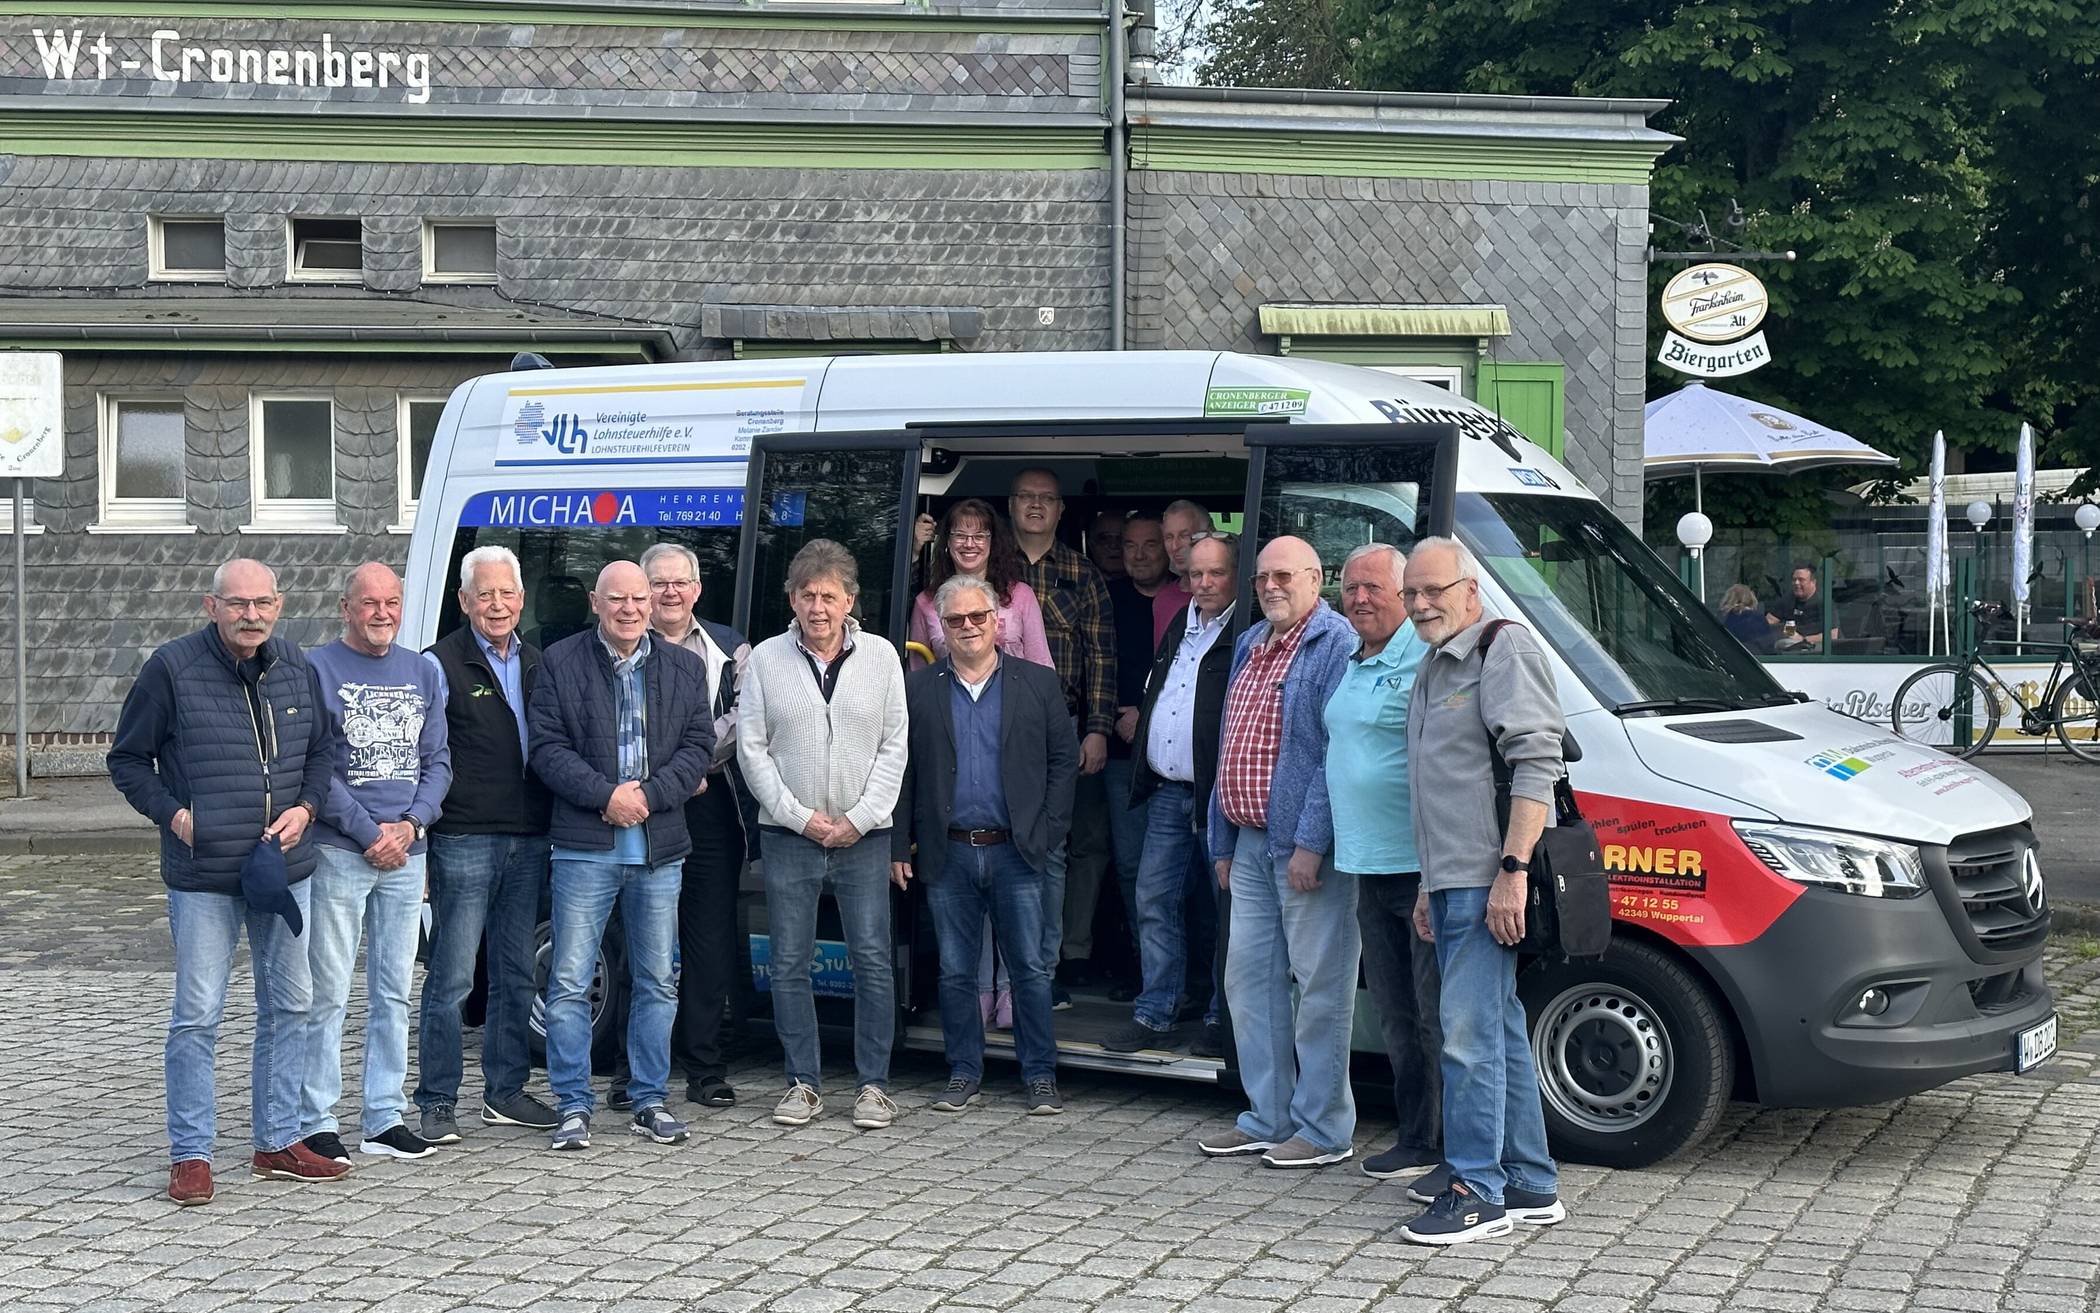  Vereinsvorstand und ehrenamtliche Fahrerinnen und Fahrer des Vereins „Dörper Bus“ mit ihrem neuen Fahrzeug  